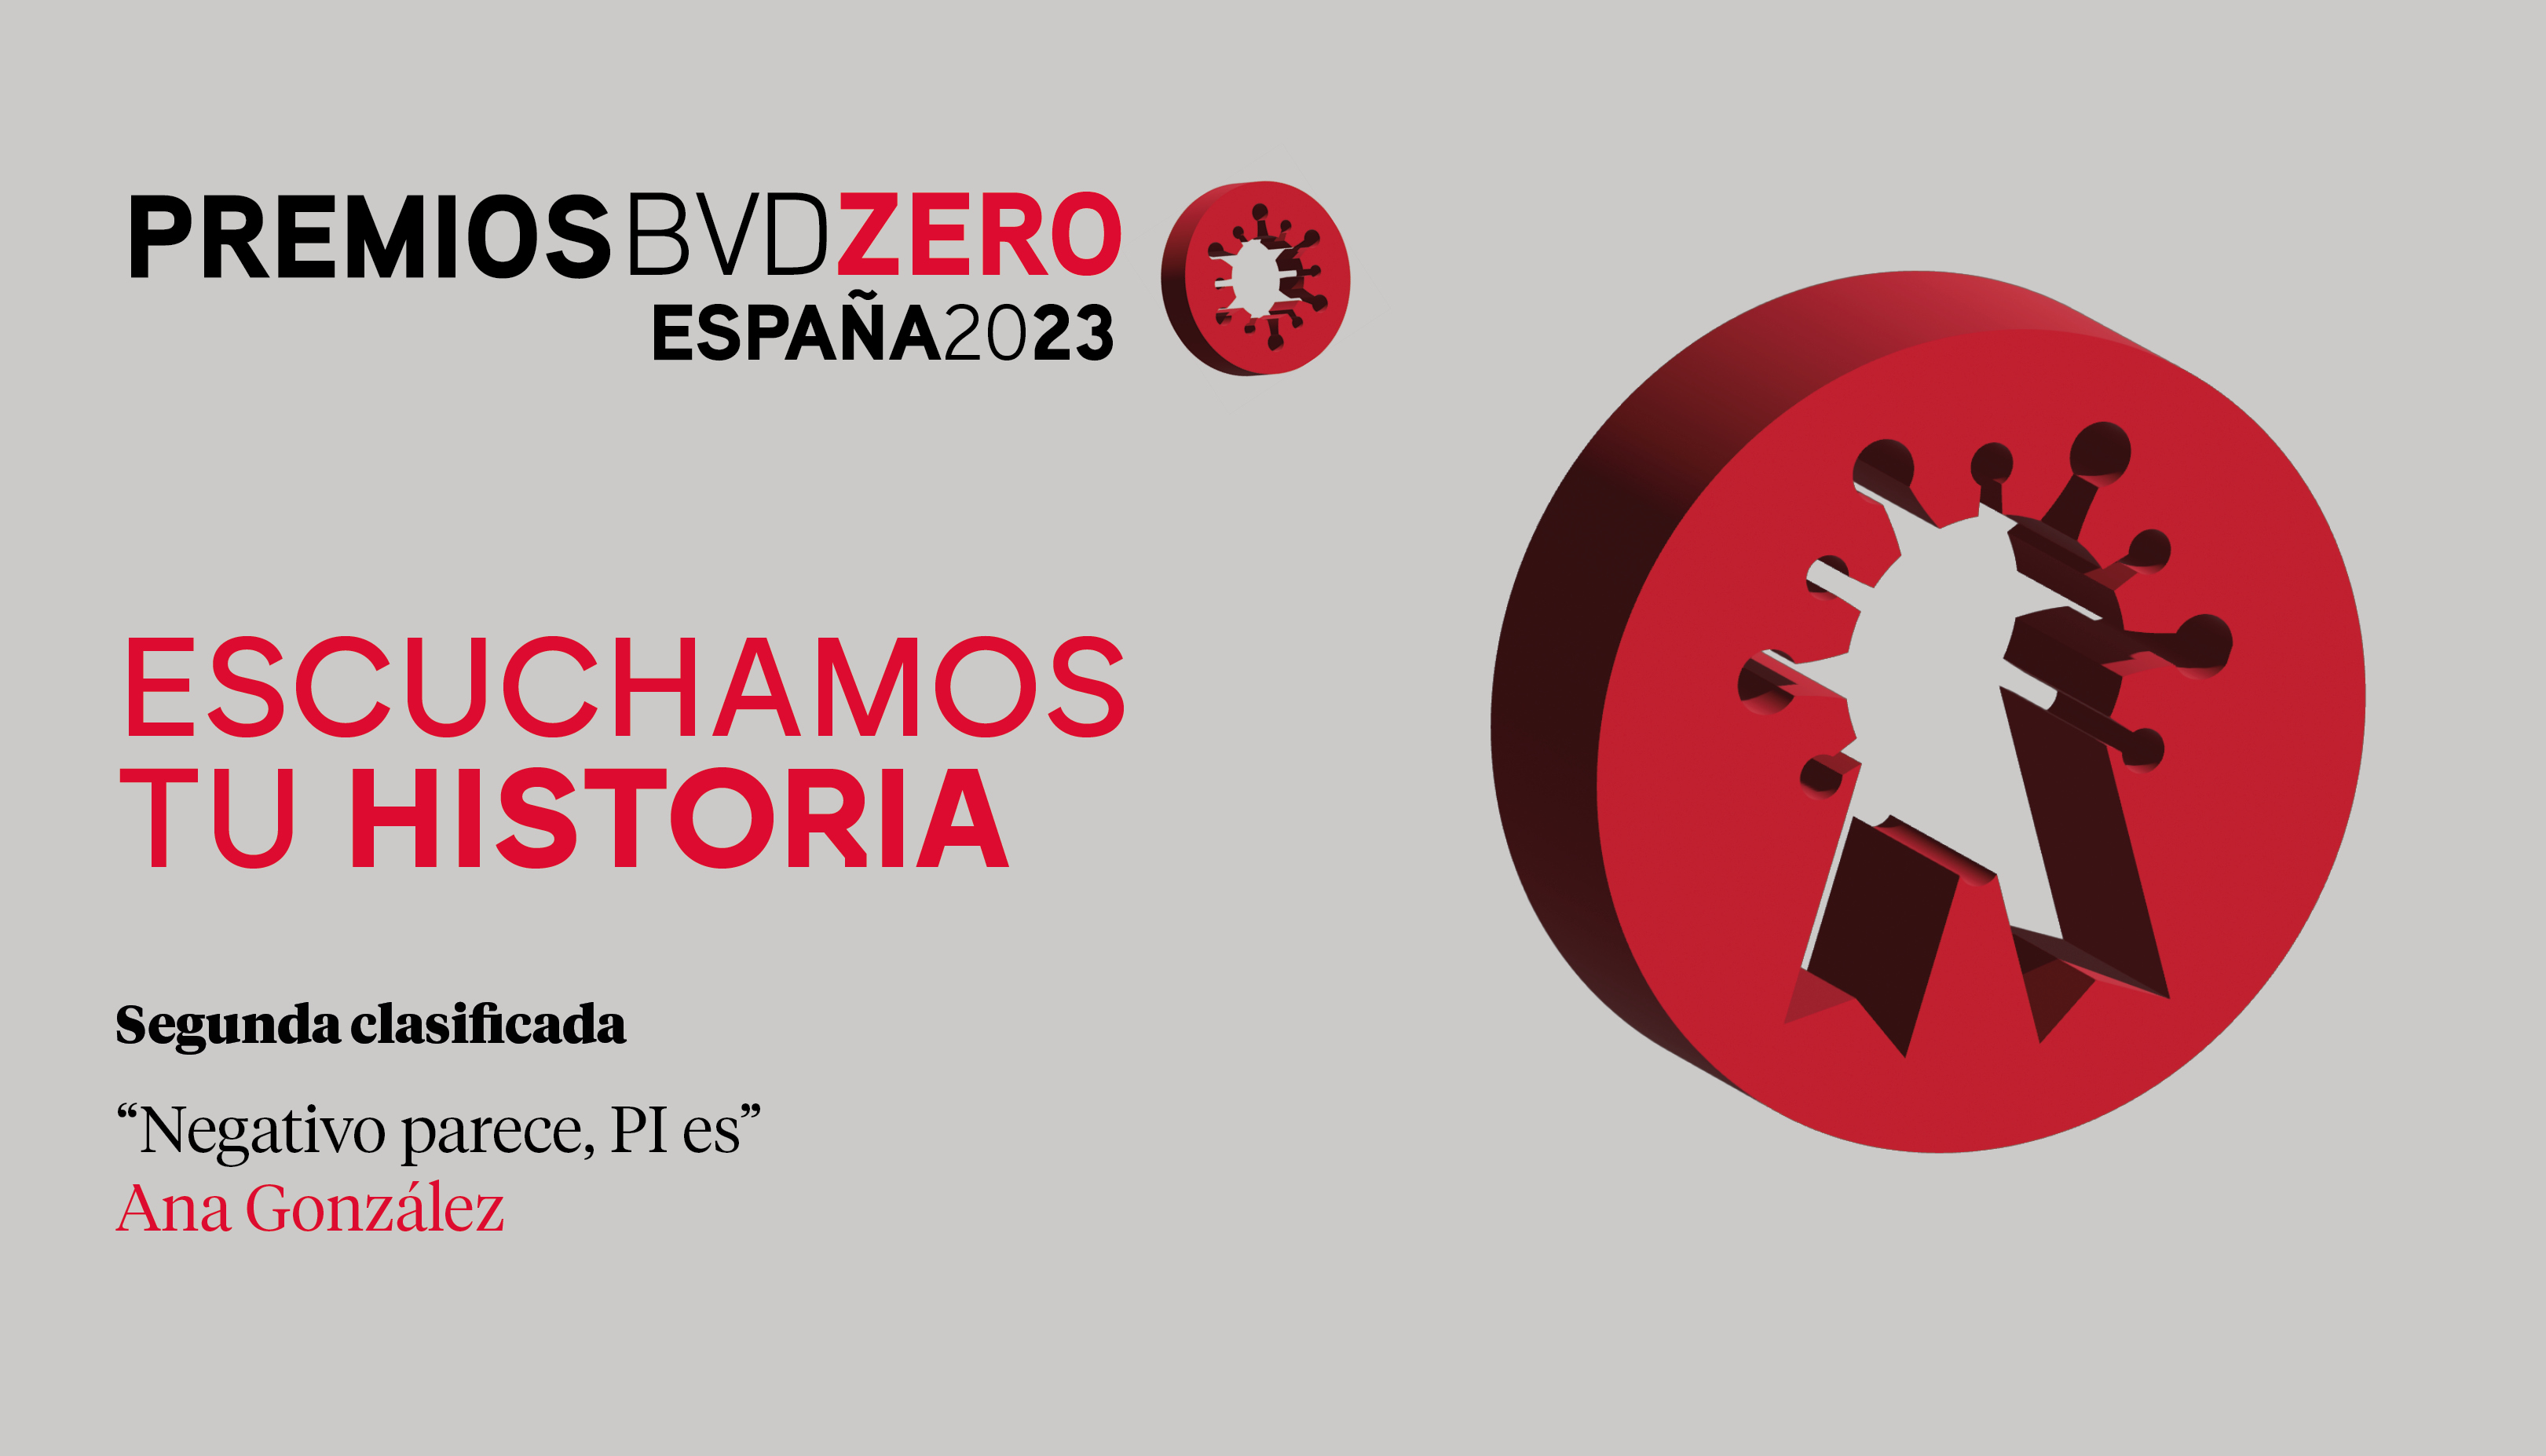 Segundo Clasificado Premios  BVDZERO España 2023